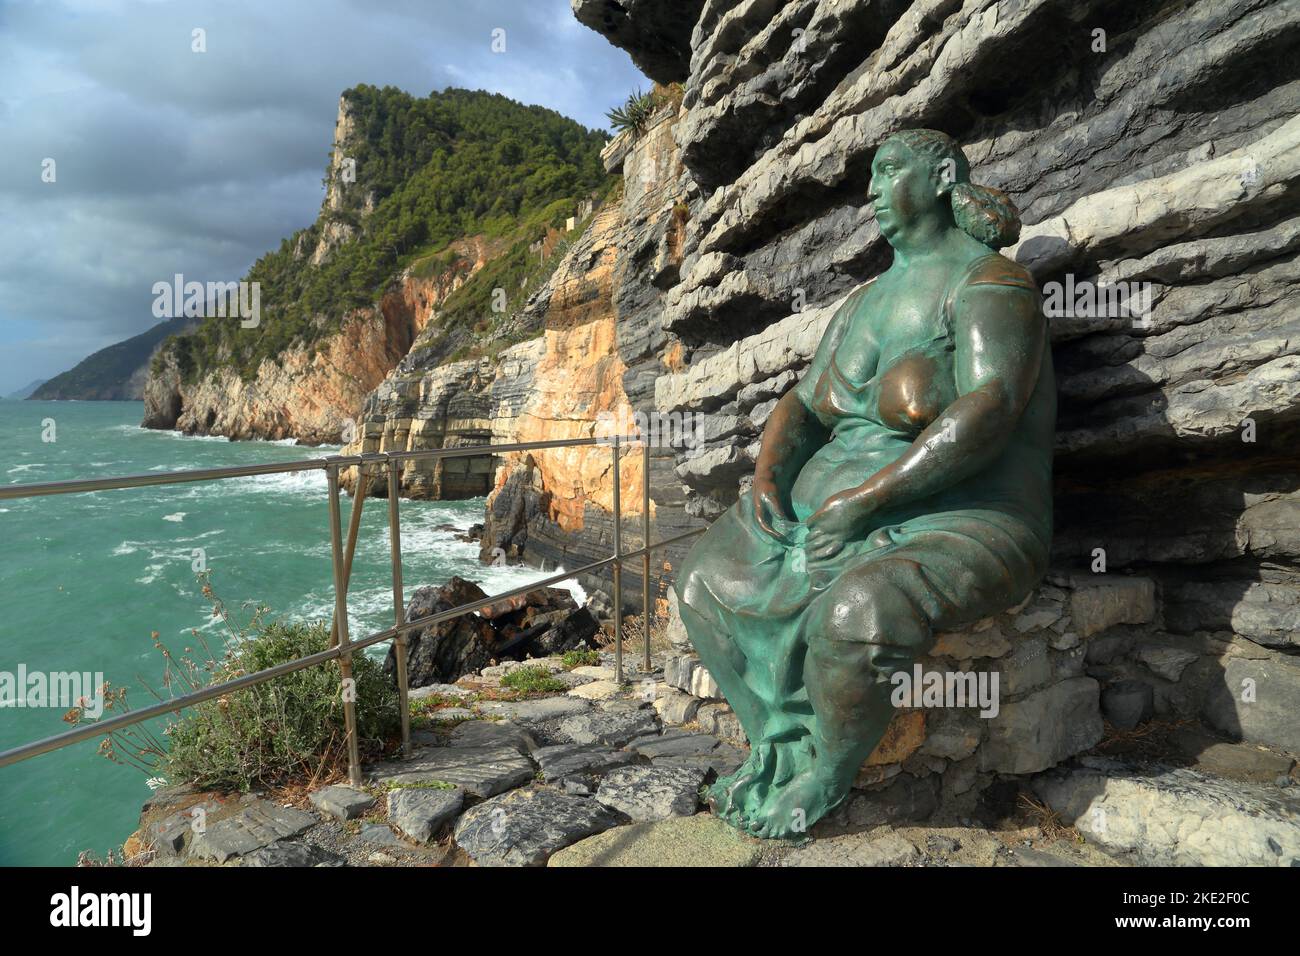 Estatua de bronce MATER NATURAE - Madre Naturaleza, artista Lello Scorzelli, Porto Venere (Portovenere), Italia. Foto de stock